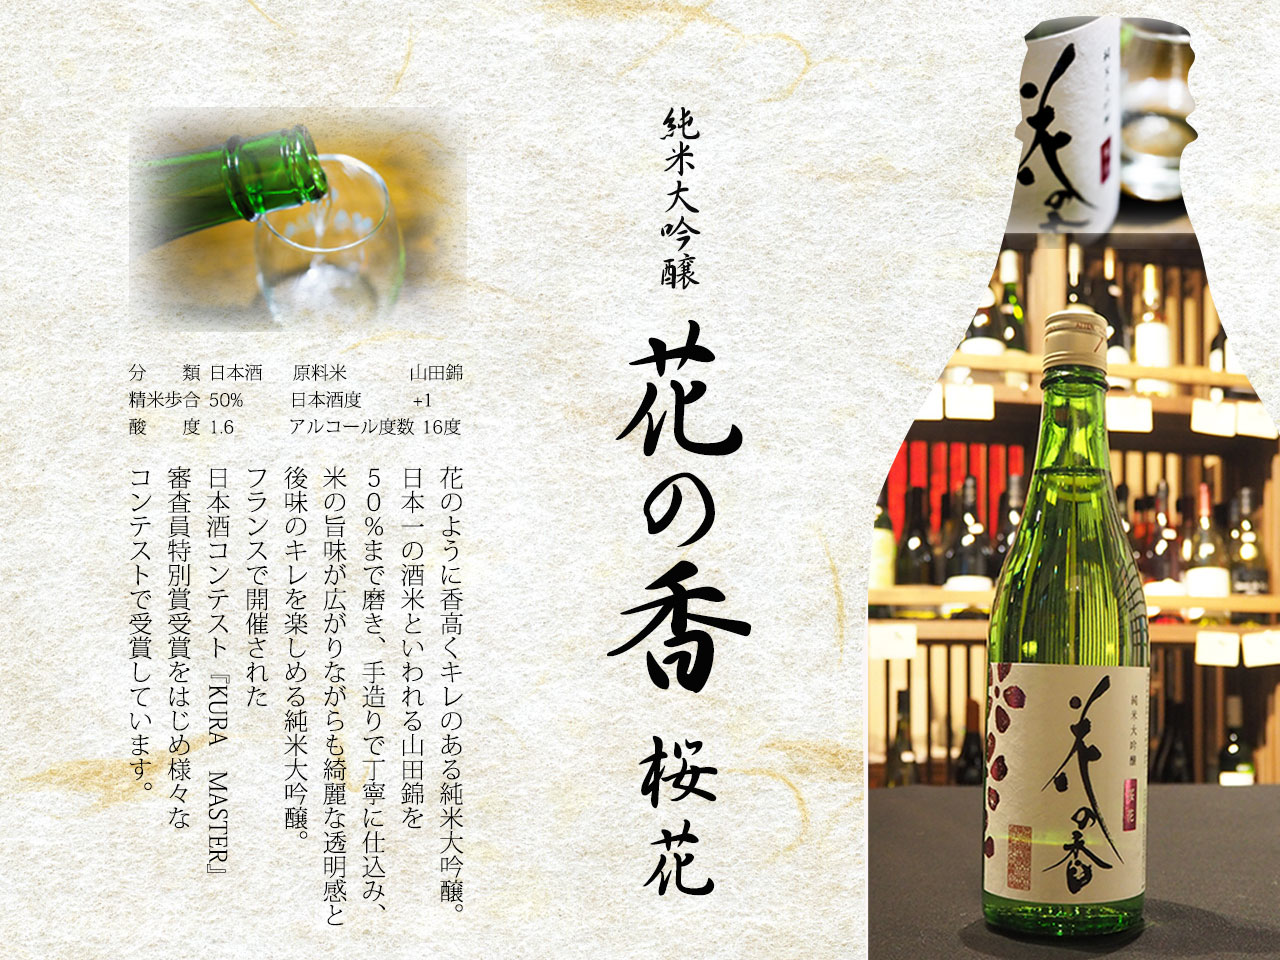 純米大吟醸 花の香 桜花、分類日本酒　、原料米山田錦精米歩合50%、日本酒度+1酸度1.6、アルコール度数16度春風のような香りがふわっと広がり日本酒ですがワインのよう味わいで女性にも飲みやすいお品です。